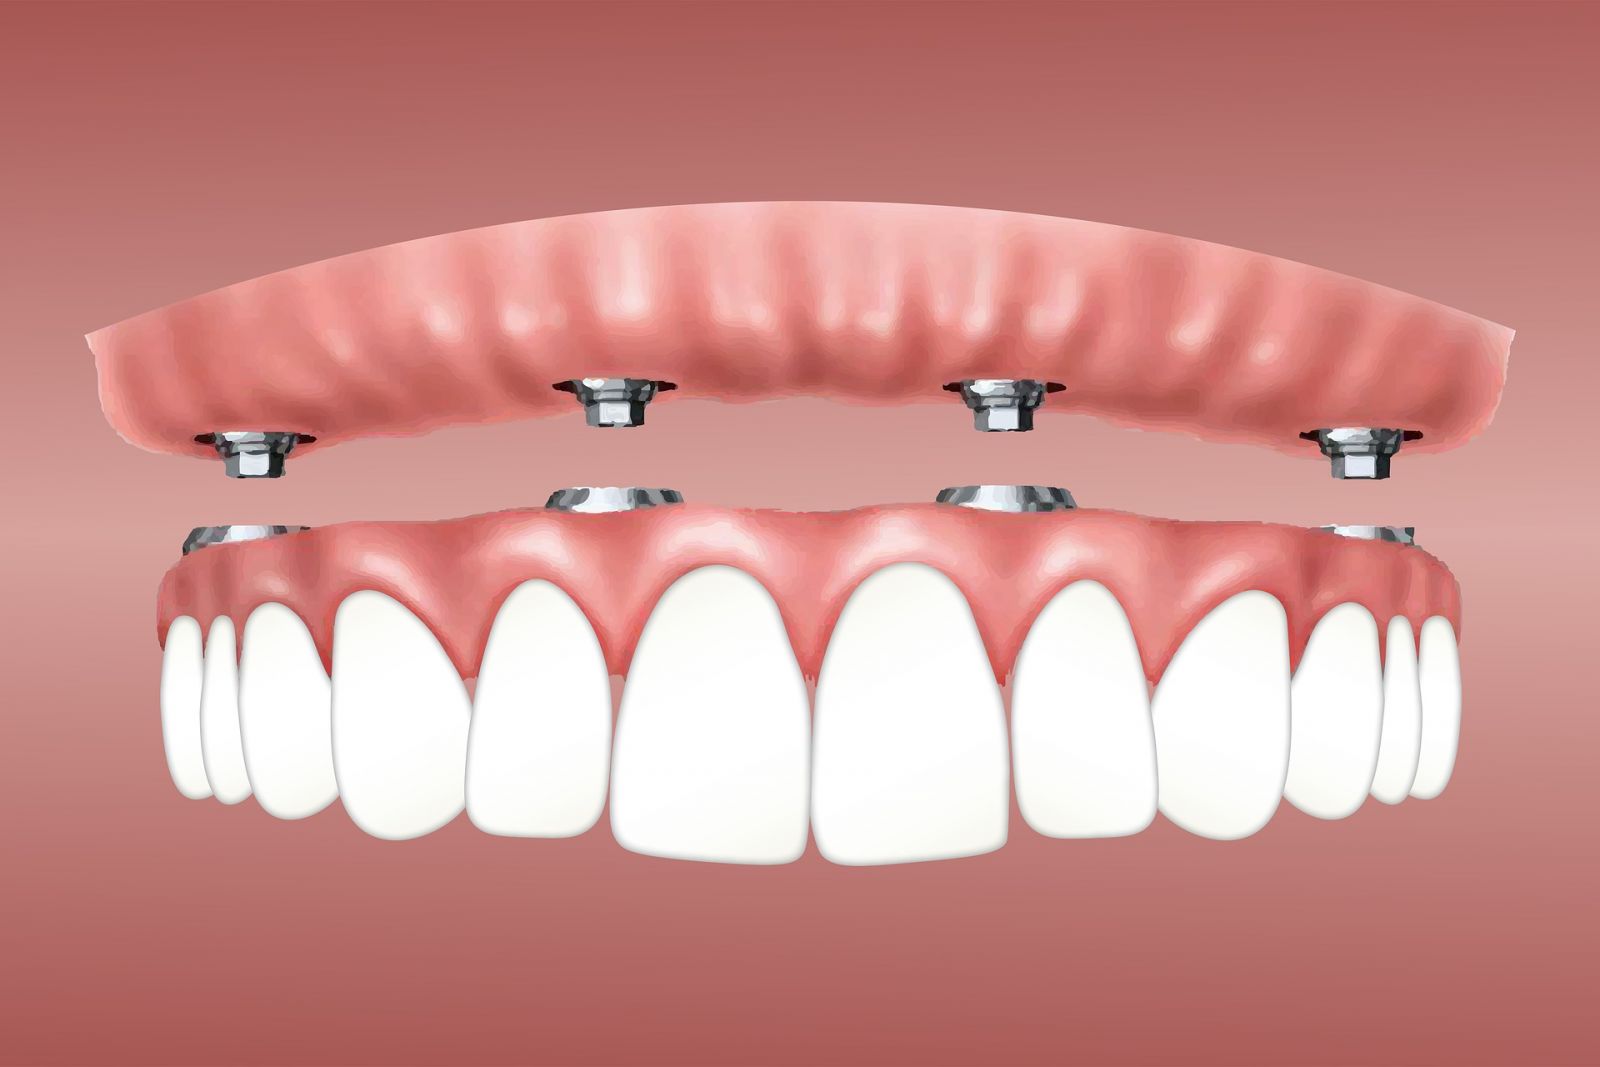 Segnini explica que a colocação de um implante dentário oferece um suporte estável para a prótese, que é um dente artificial